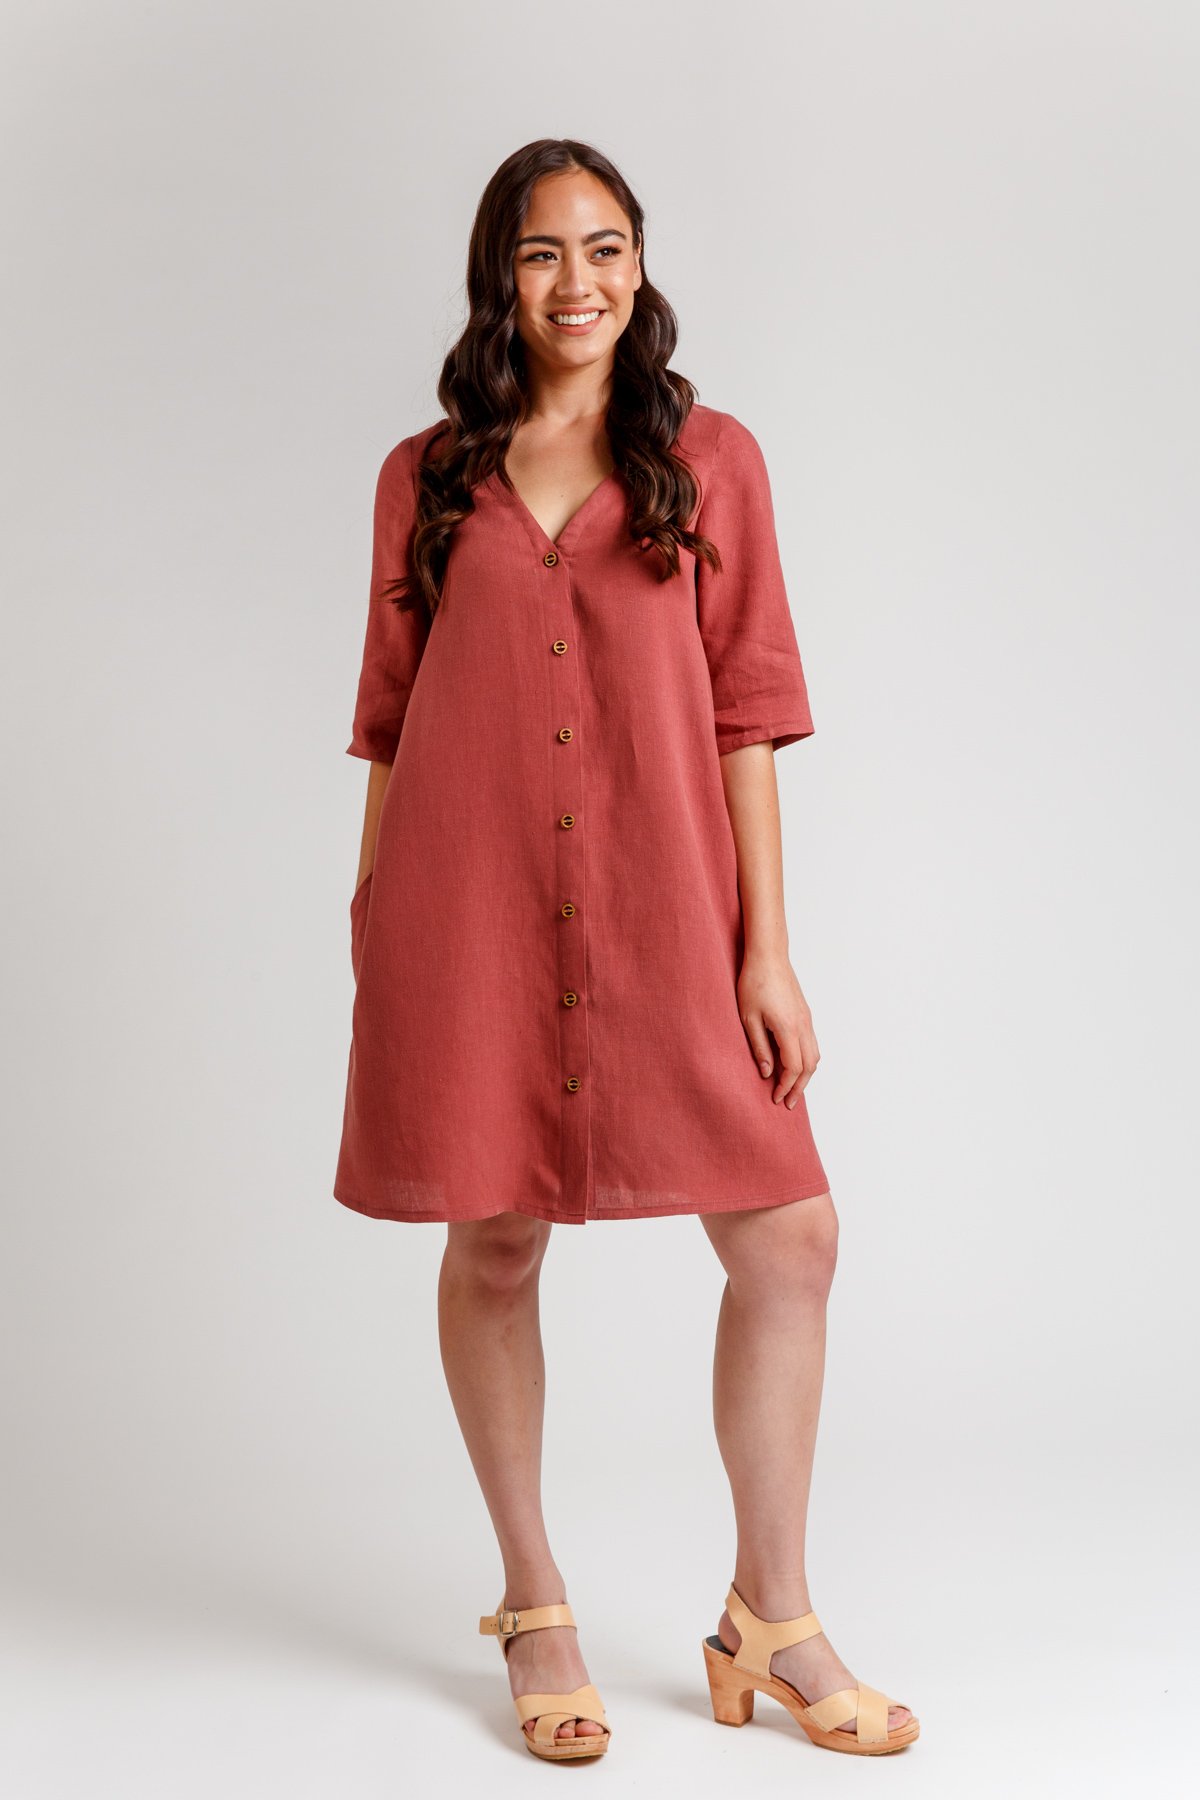 A Modern Darling Ranges Shirt Dress: Megan Nielsen Pattern Review – Sie  Macht